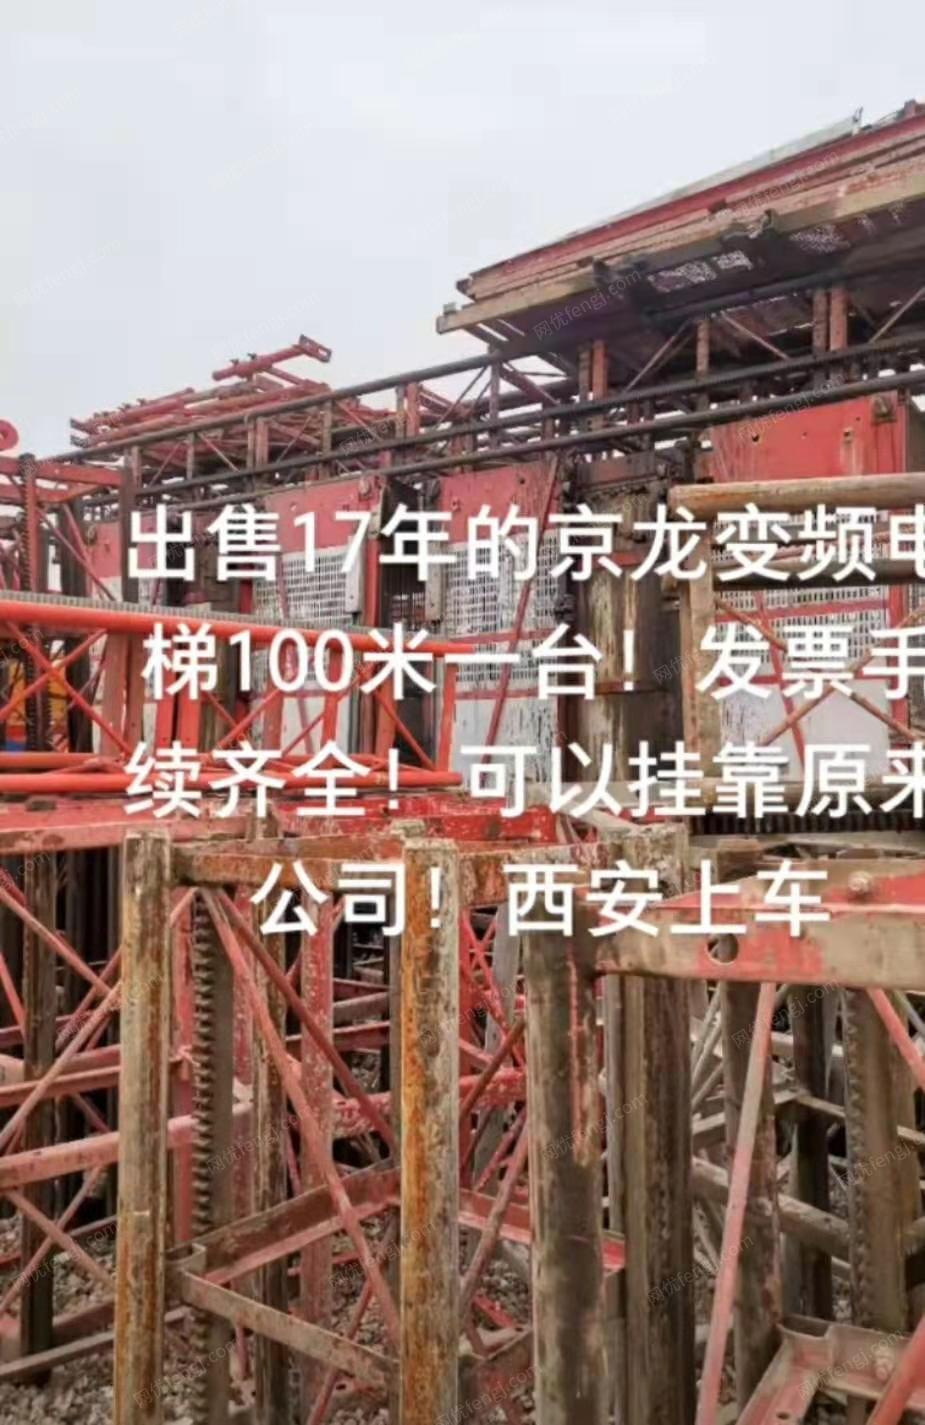 出售闲置17年的京龙变频电梯100米一台